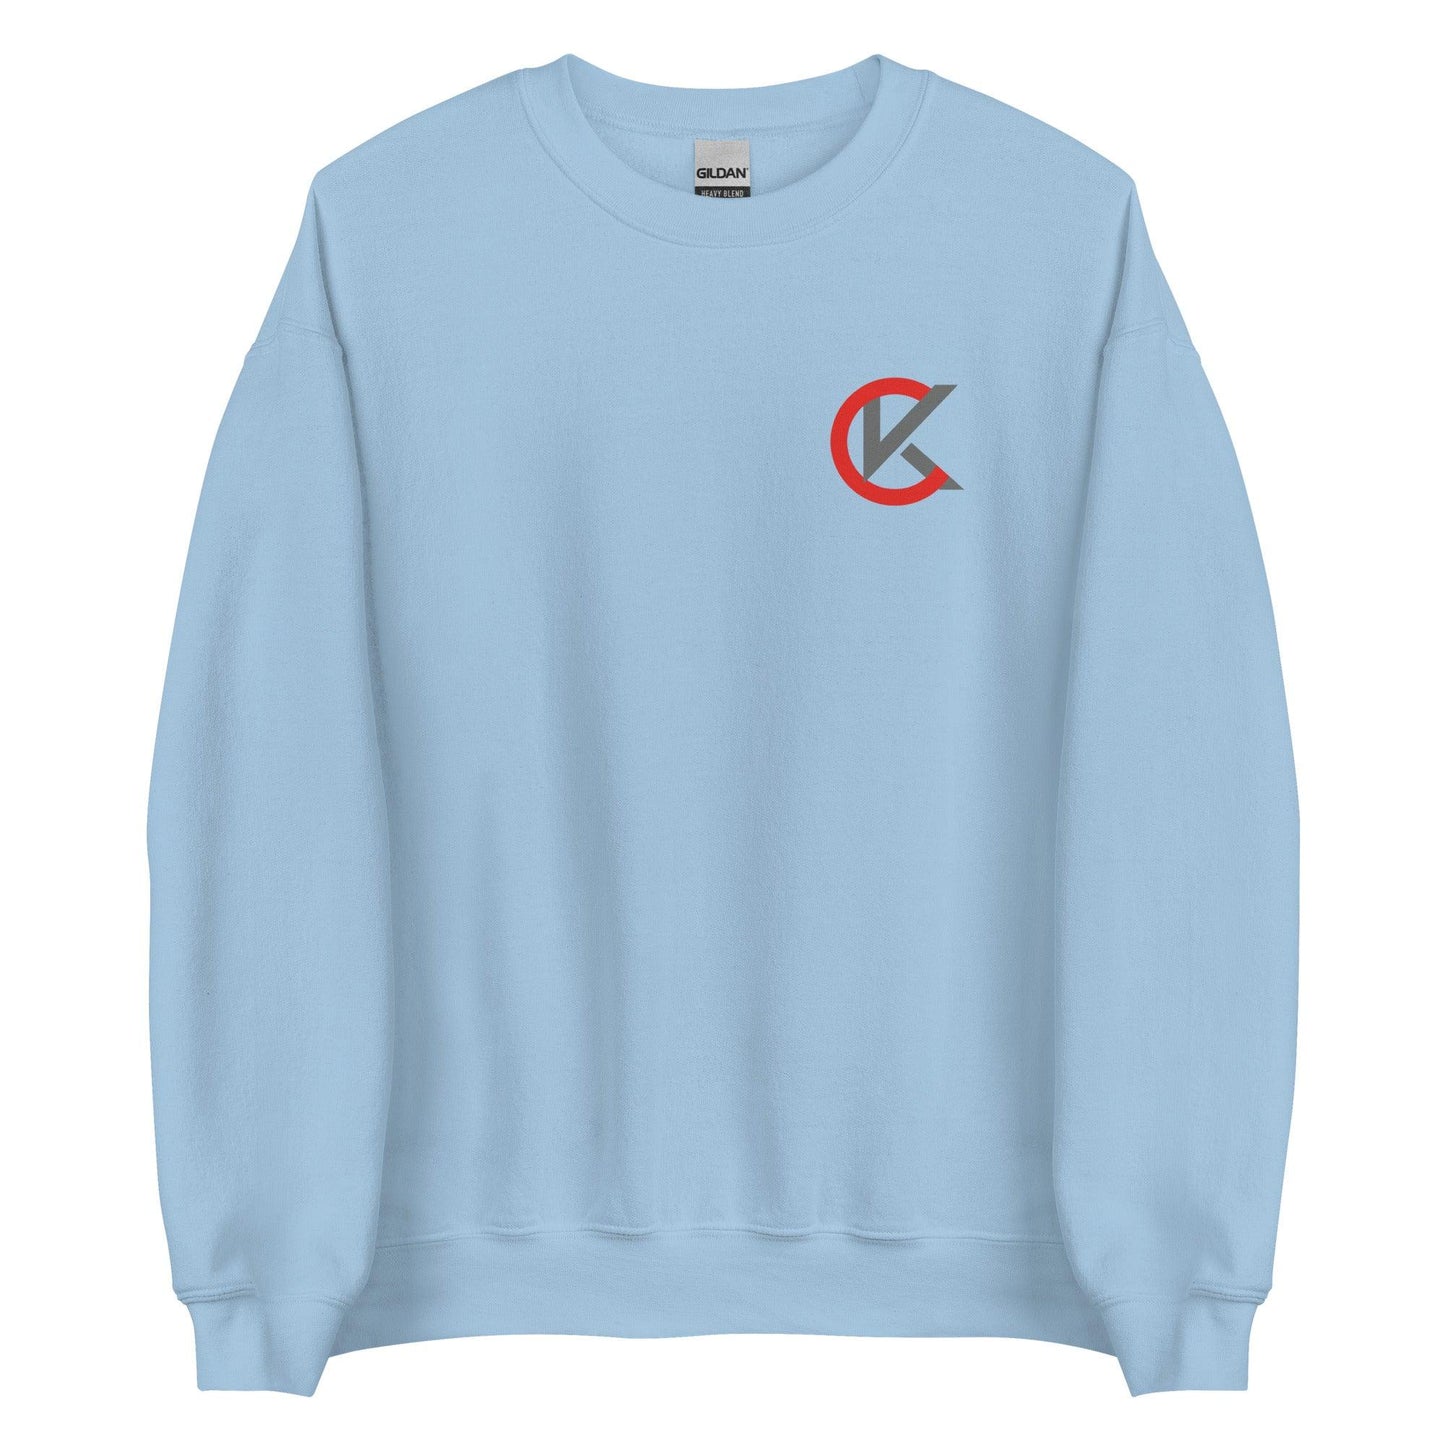 Cooper Kinney "Elite" Sweatshirt - Fan Arch